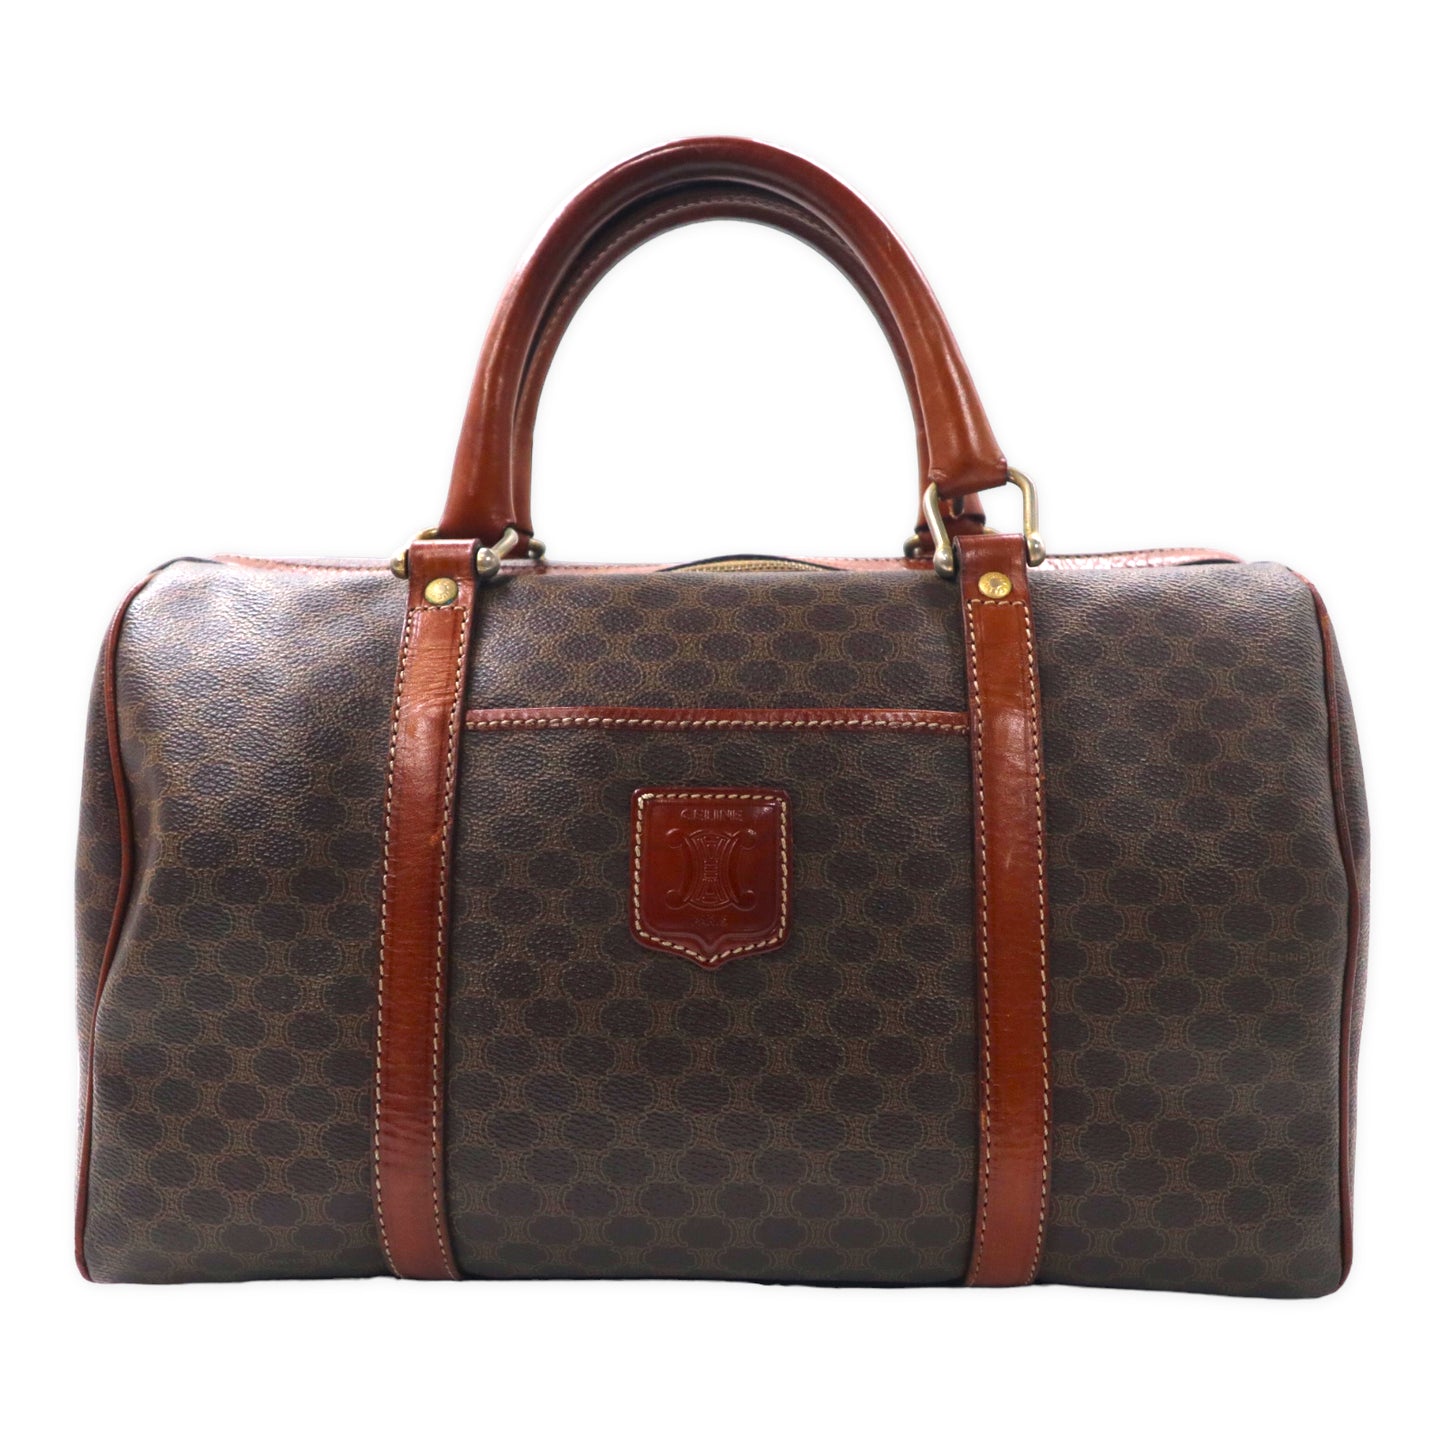 CELINE Italian MACADAM Minoboston Bag Handbag Brown PVC Leather 